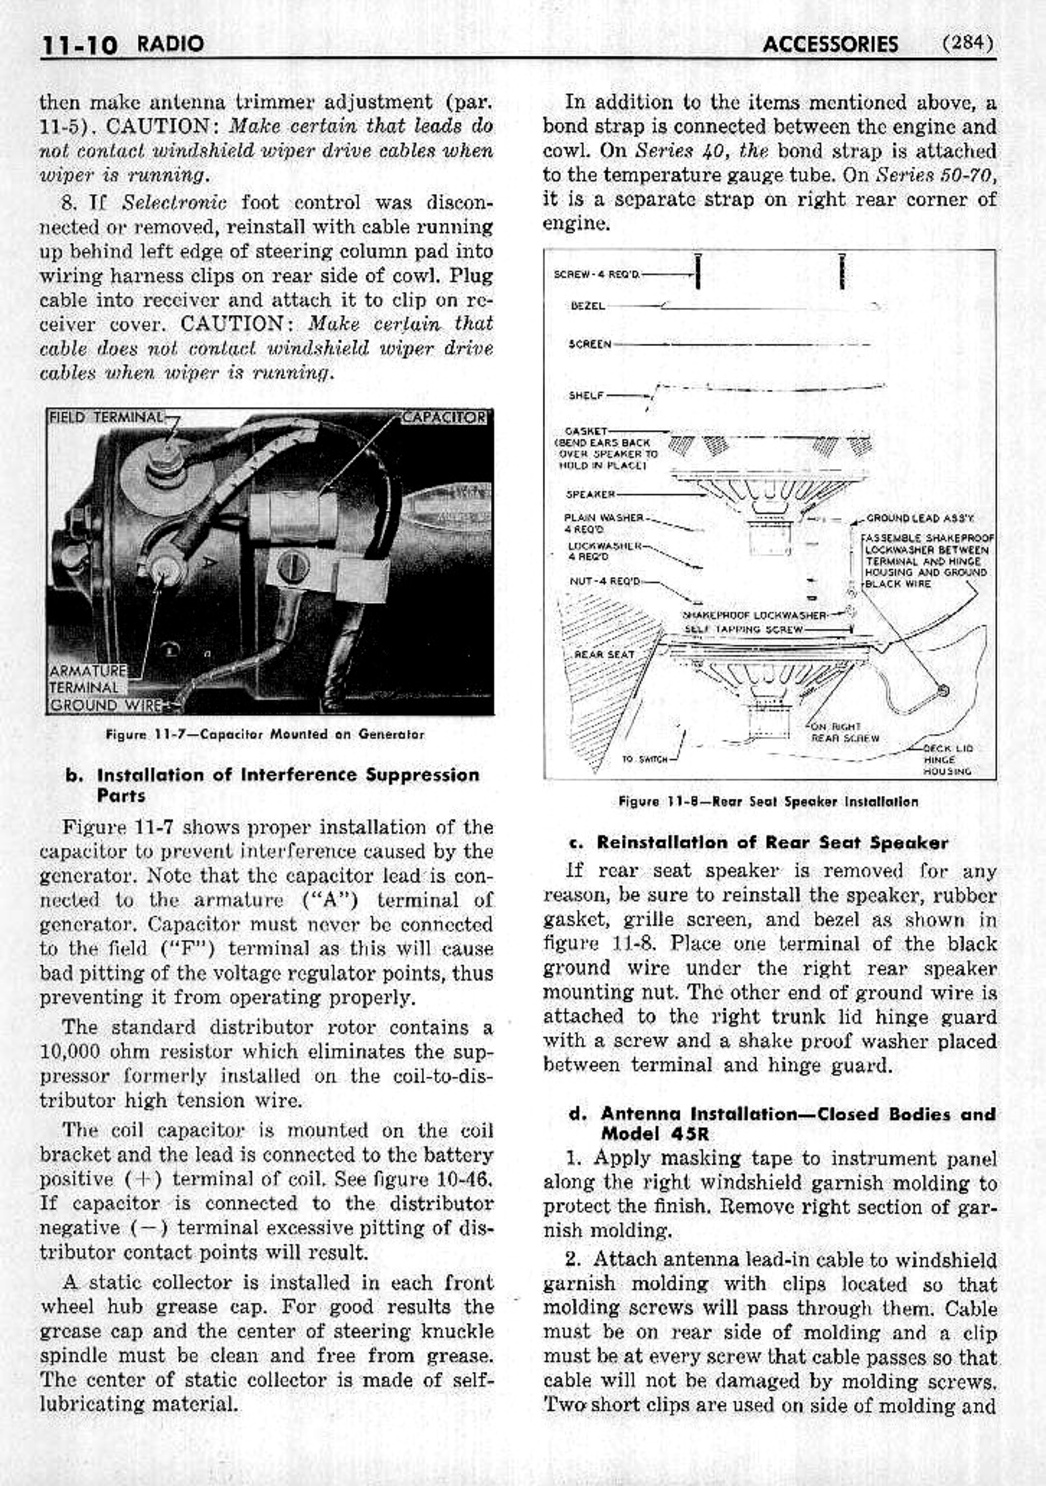 n_12 1953 Buick Shop Manual - Accessories-010-010.jpg